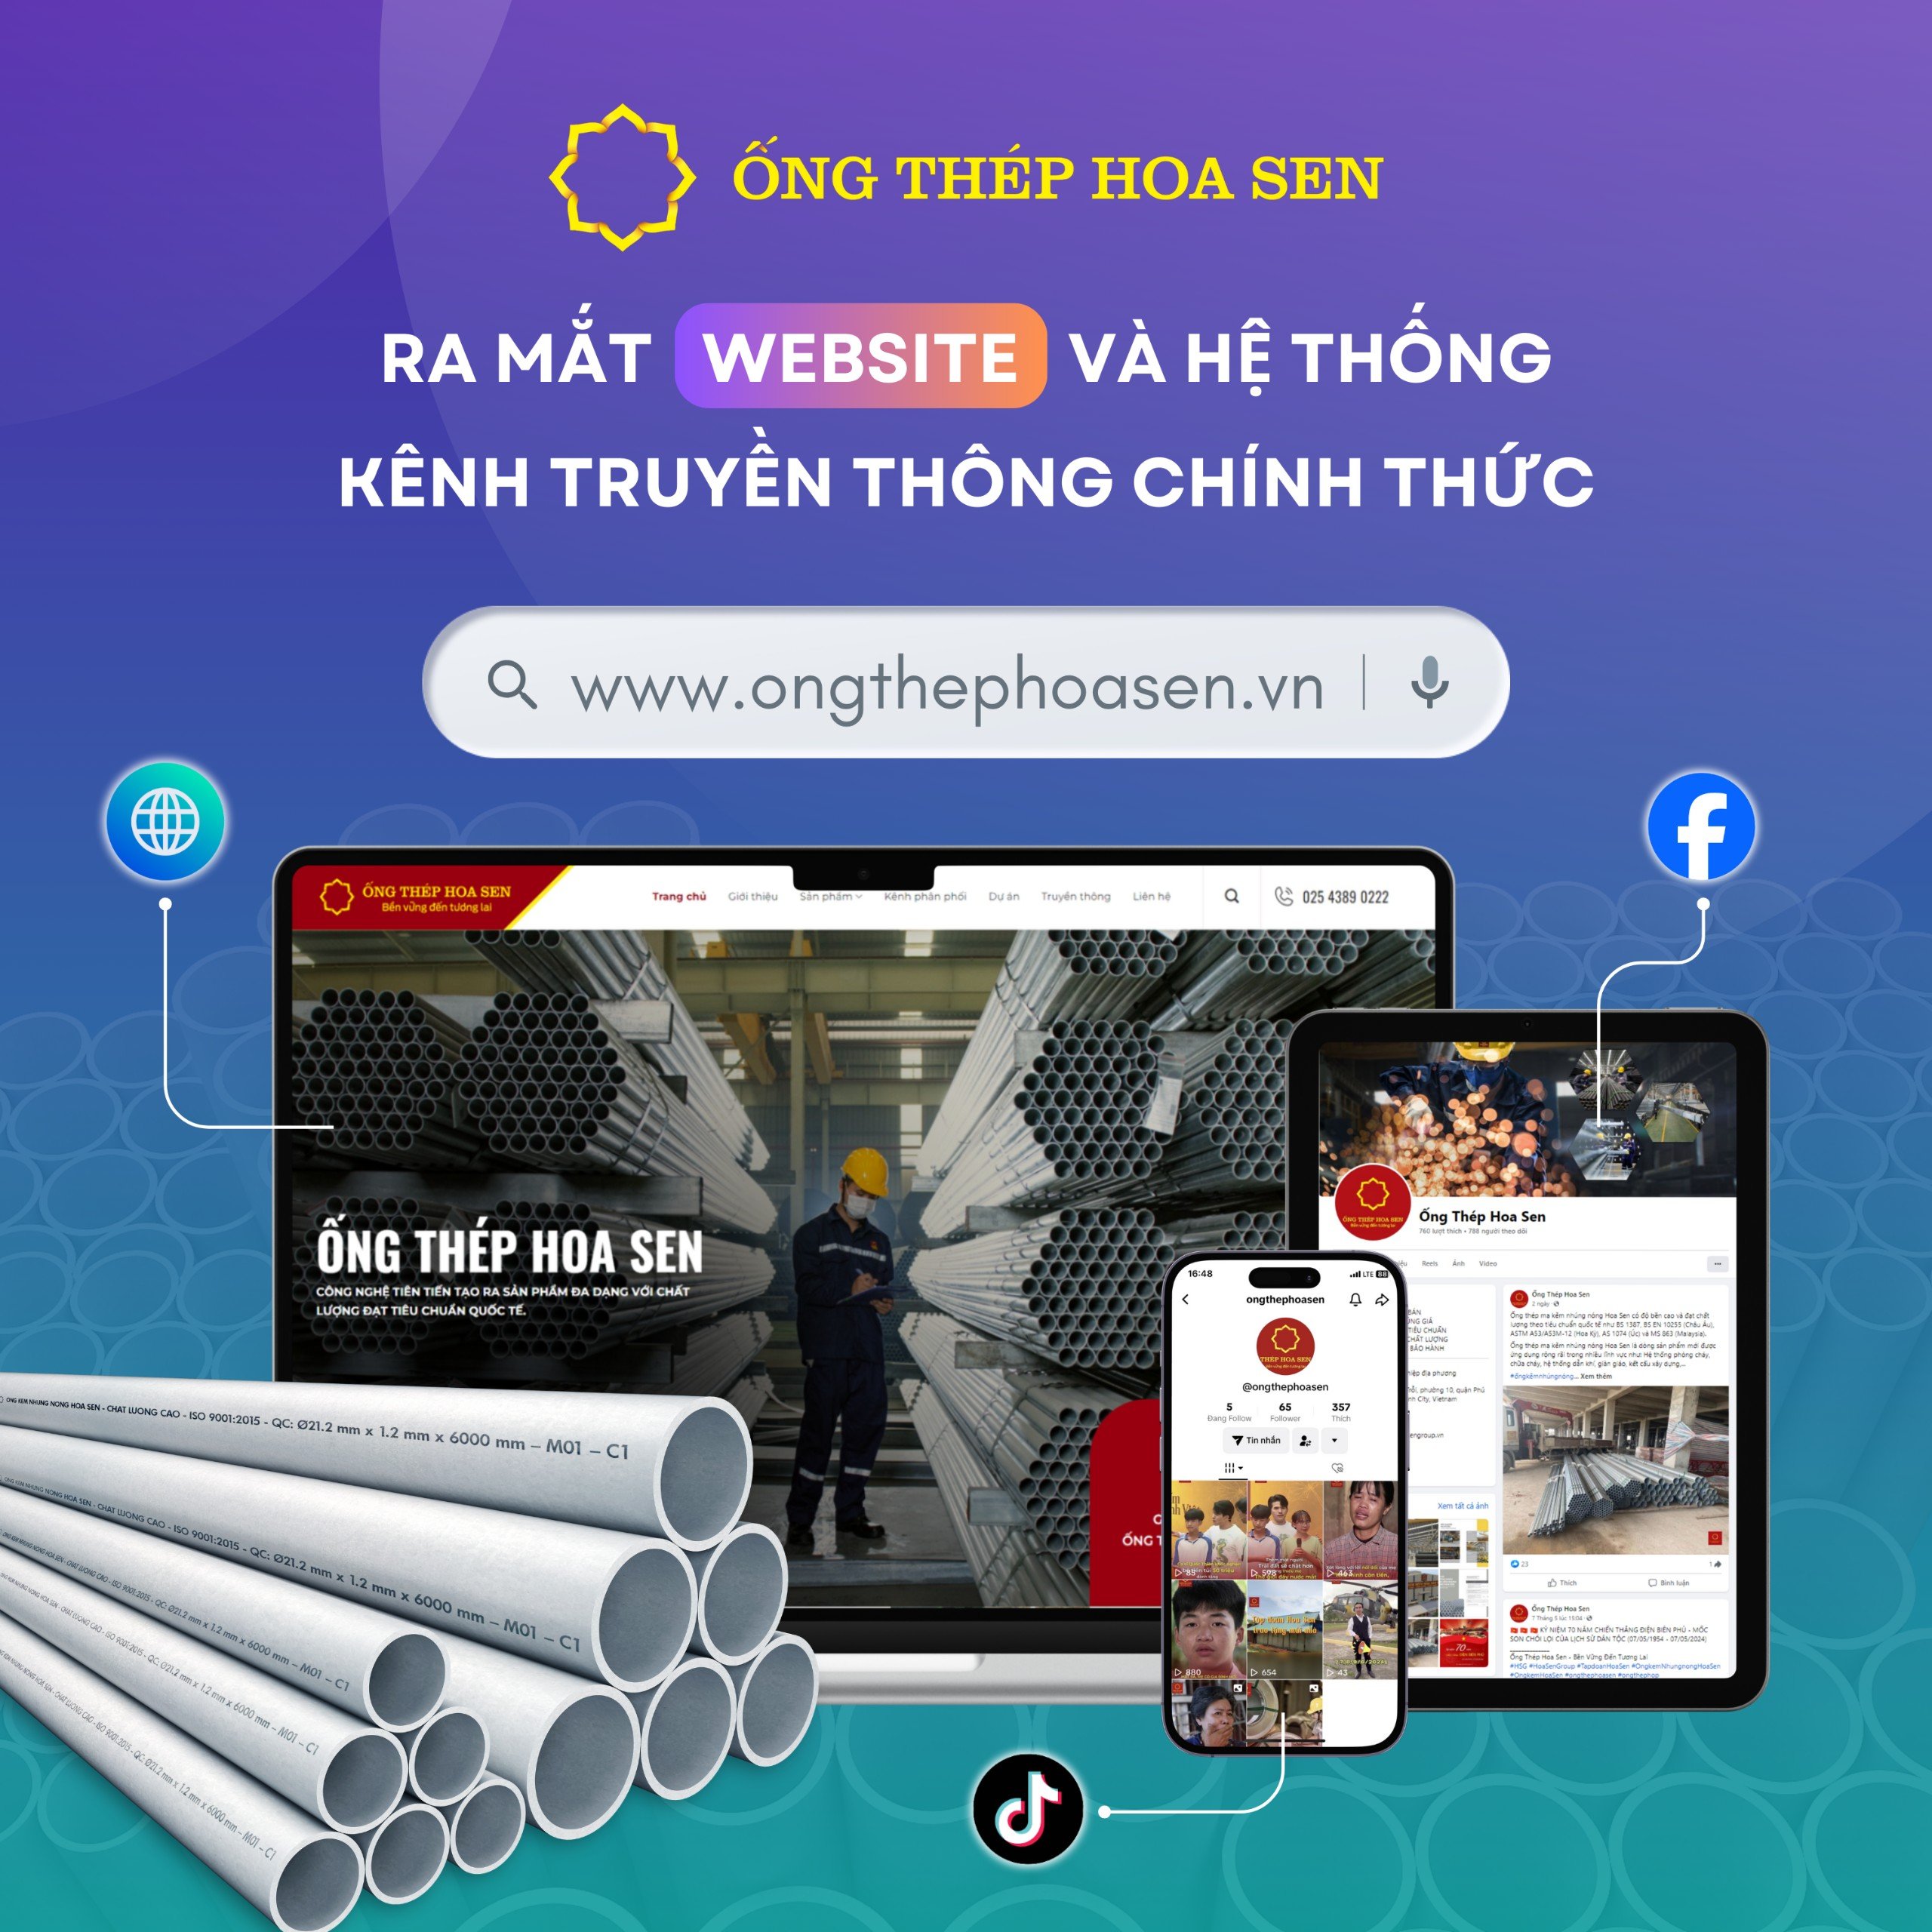 Ra mắt Website và hệ thống kênh truyền thông chính thức Ống Thép Hoa Sen SQ